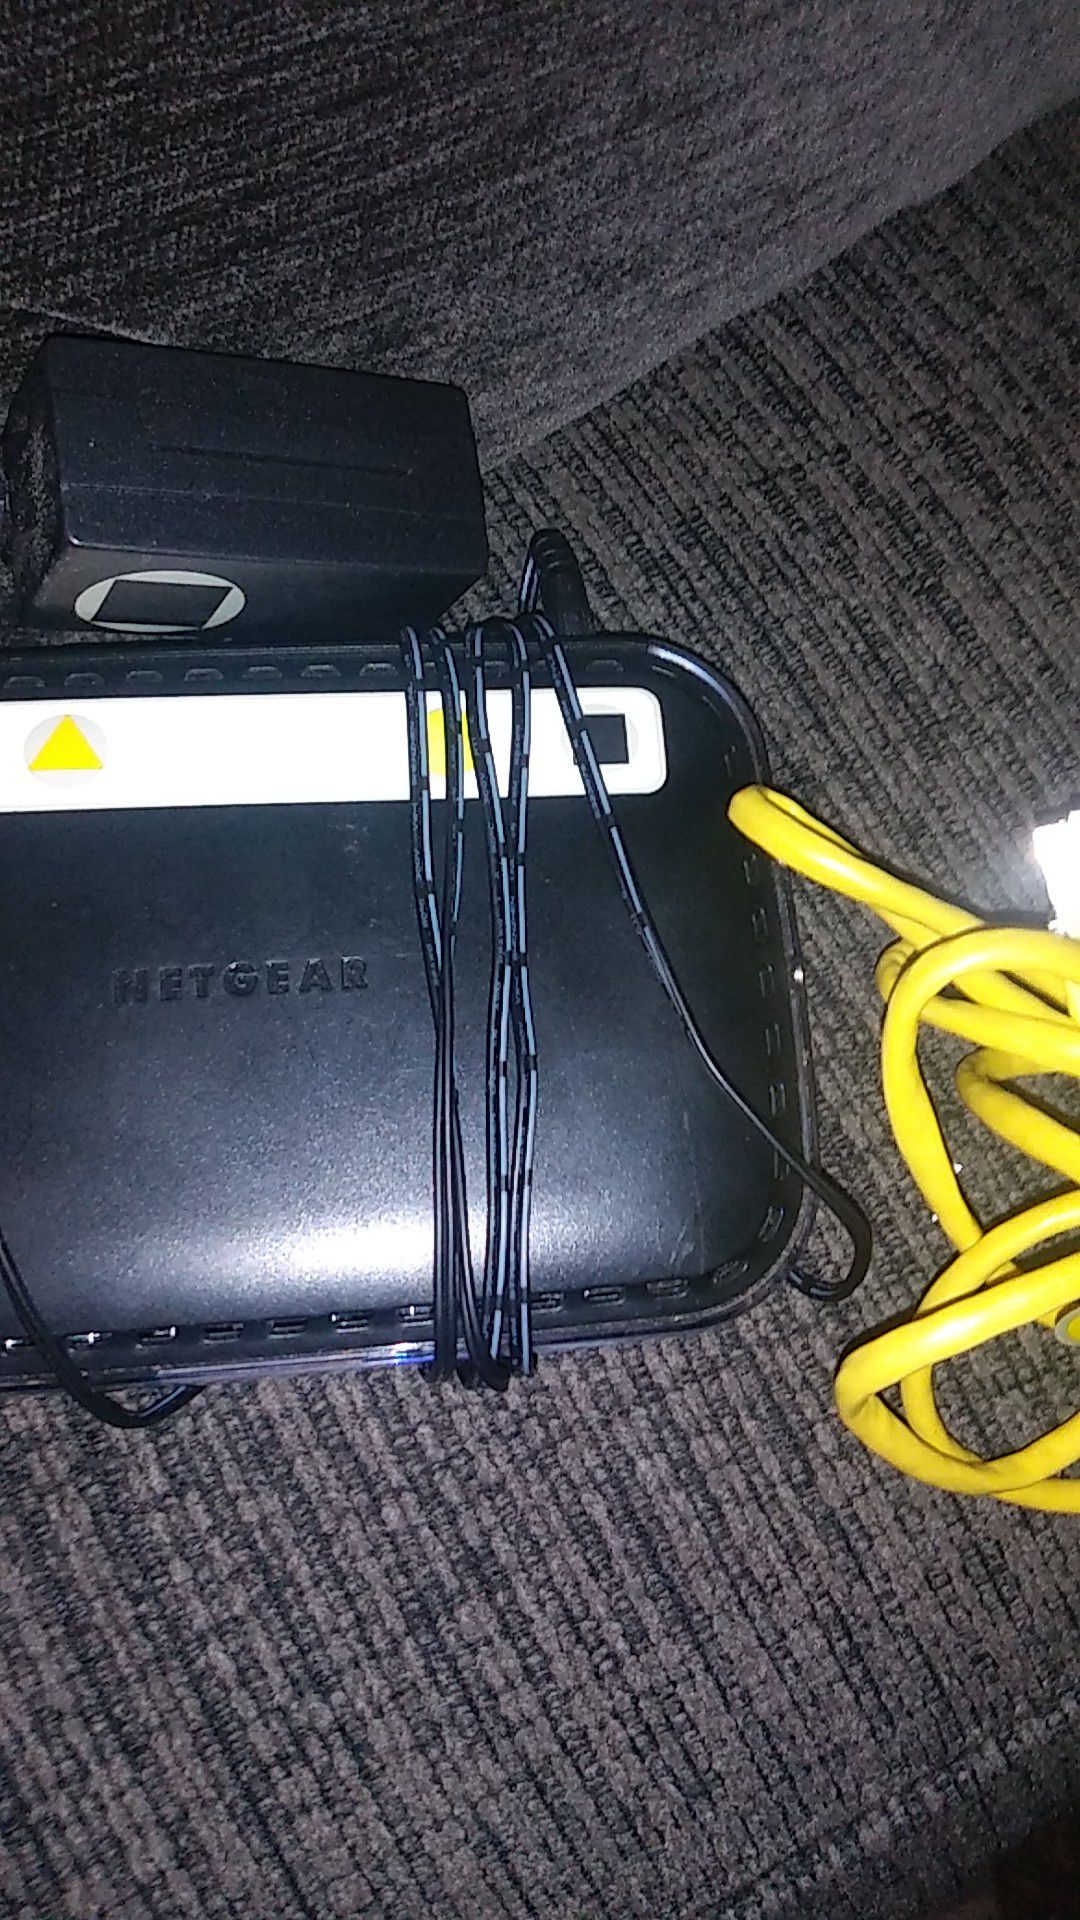 NETGEAR Wireless N150 router